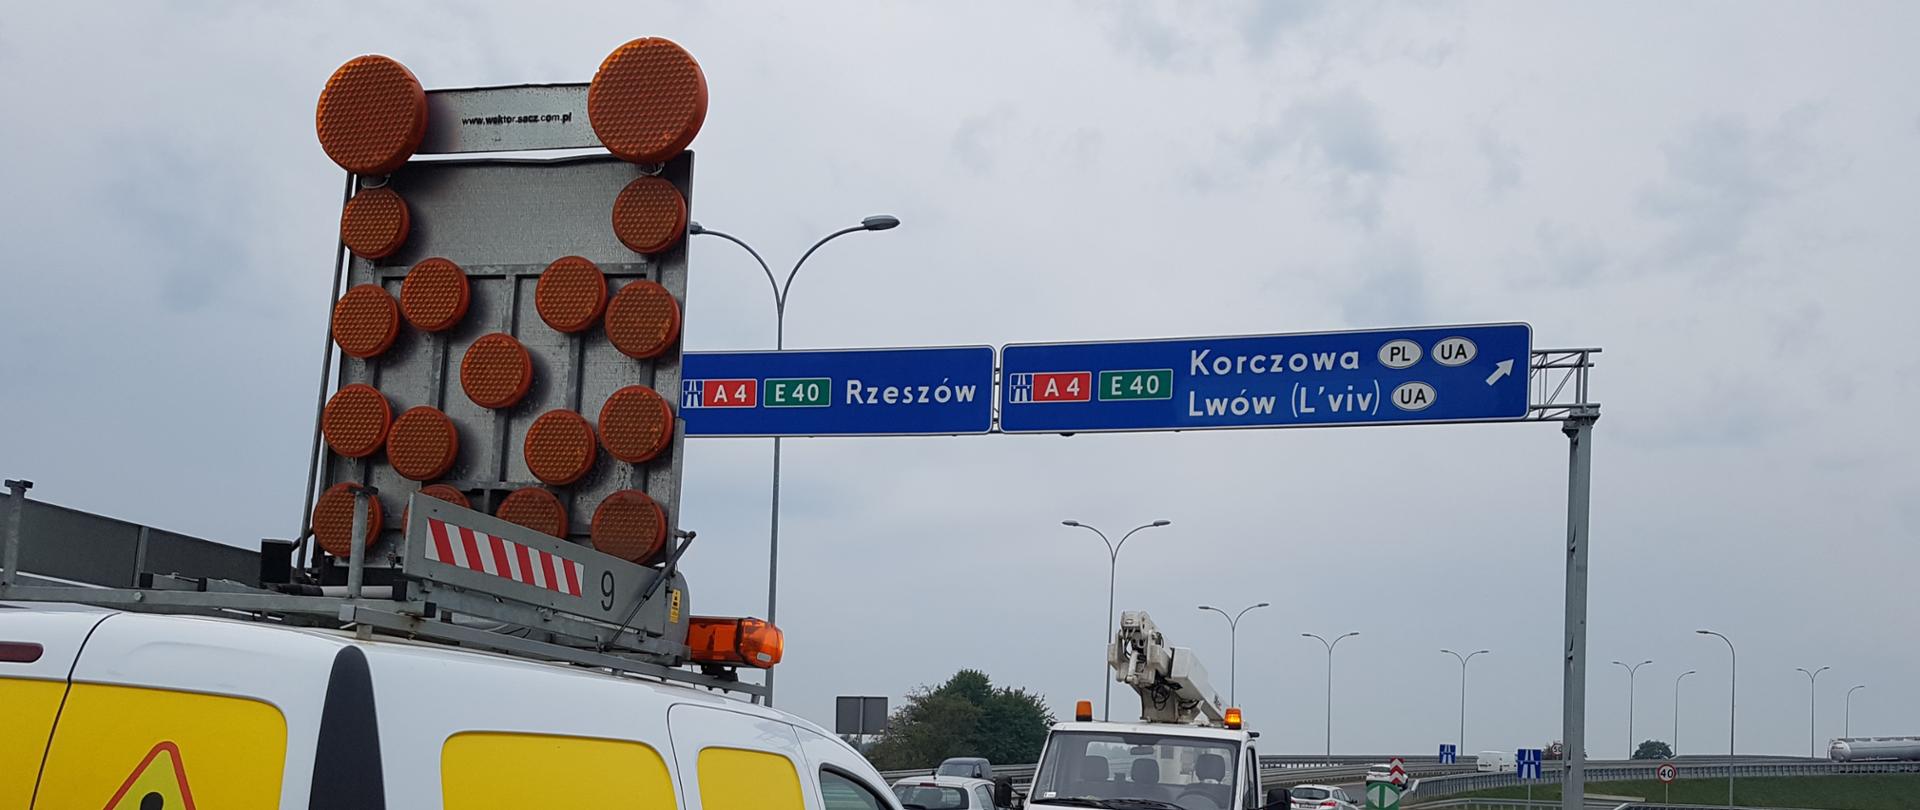 Nazwy zagranicznych miast na znakach drogowych także po polsku